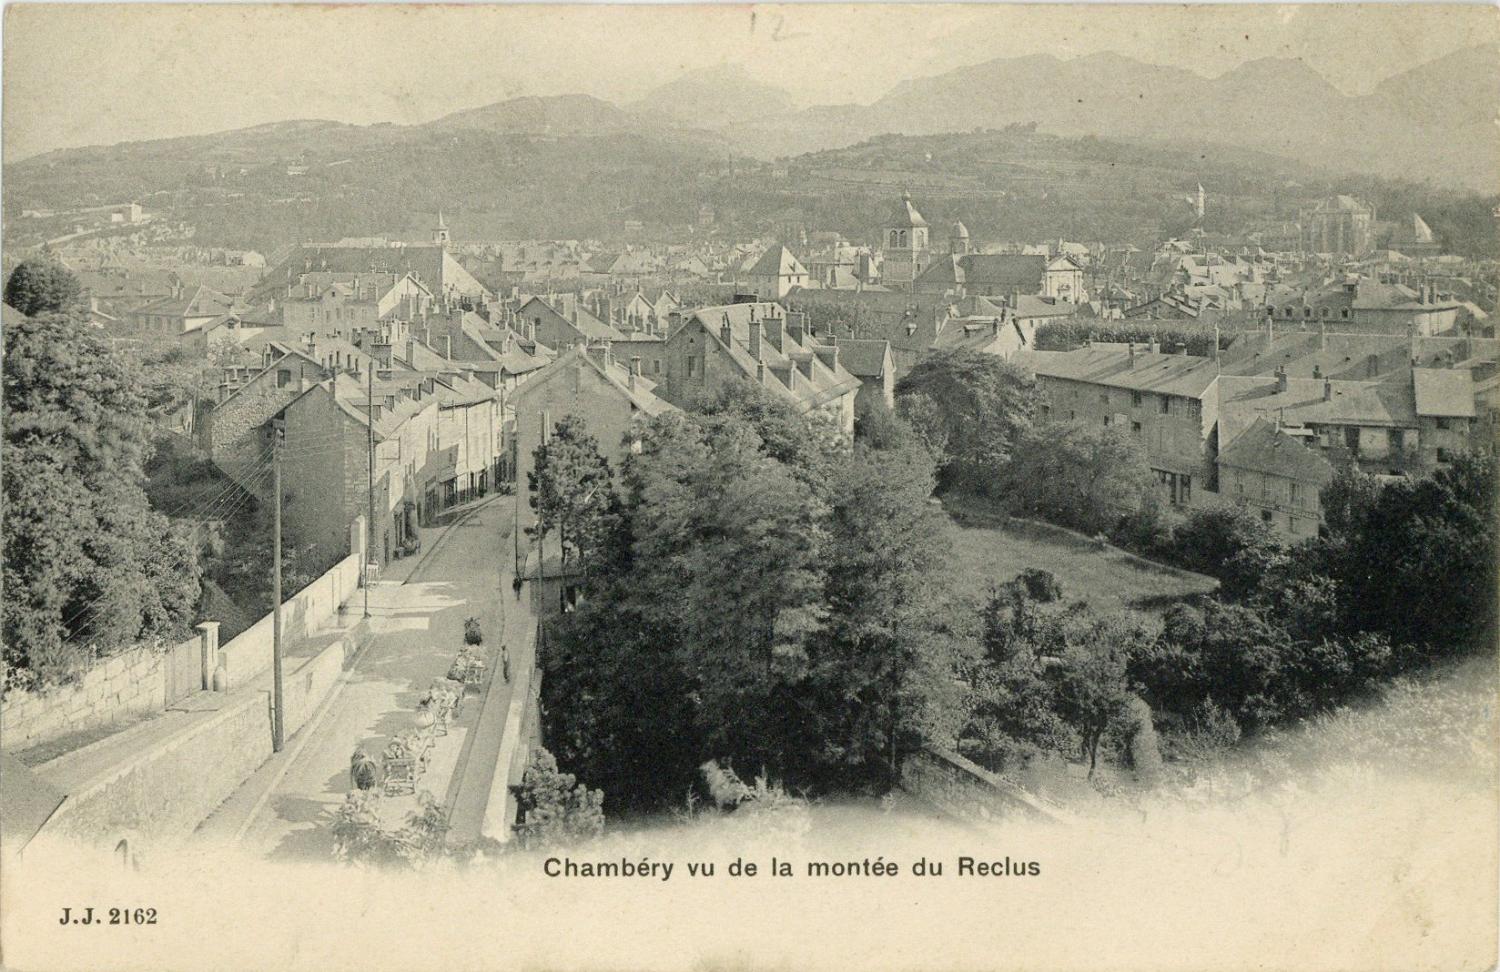 Chambéry vu de la montée du reclus.